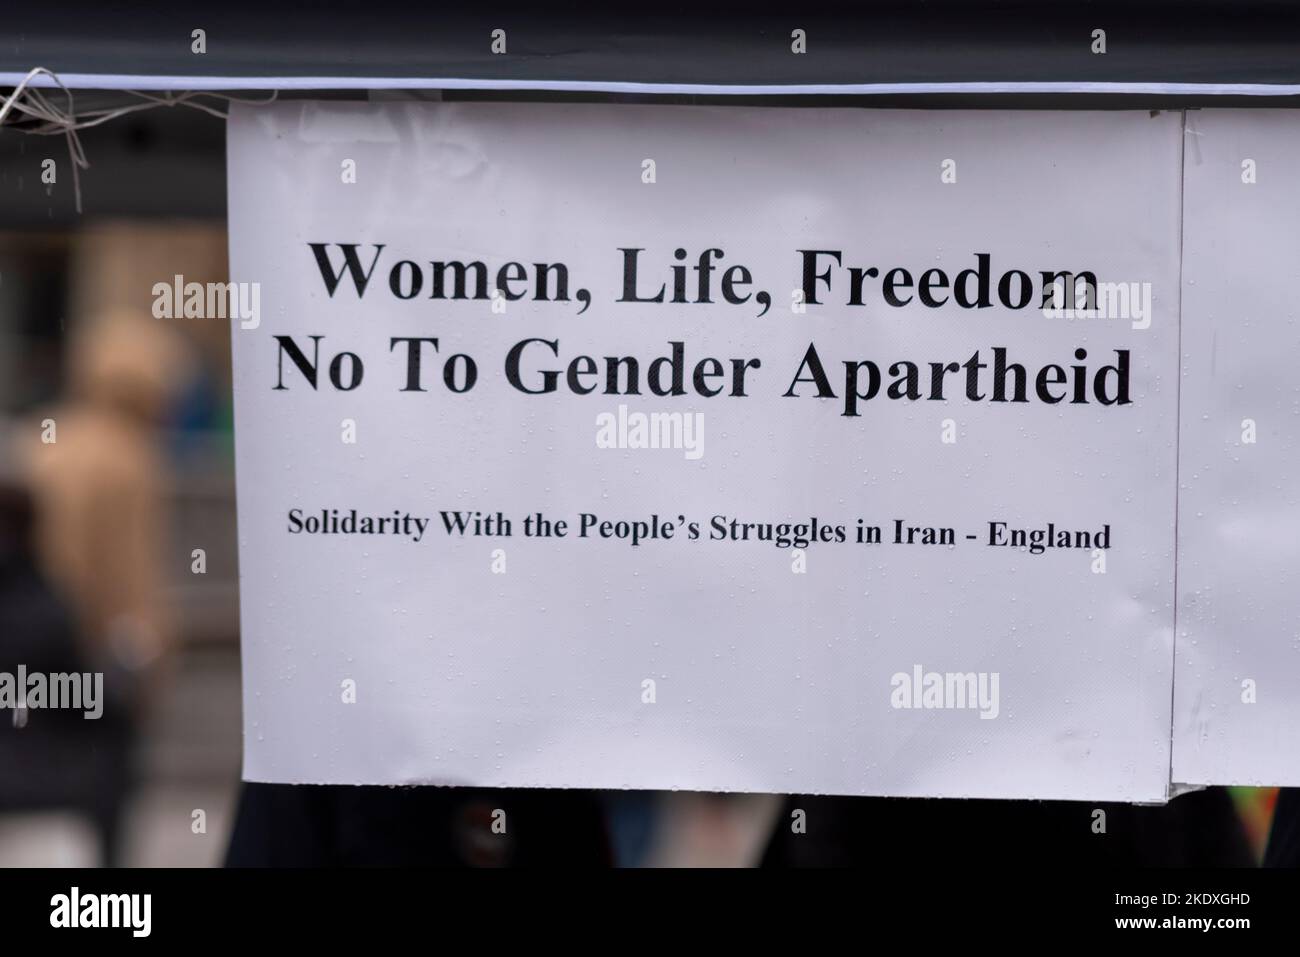 Message de protestation contre le régime iranien. Les femmes, la vie, la liberté, non à l'apartheid des sexes. Solidarité avec les luttes du peuple en Iran - Angleterre Banque D'Images